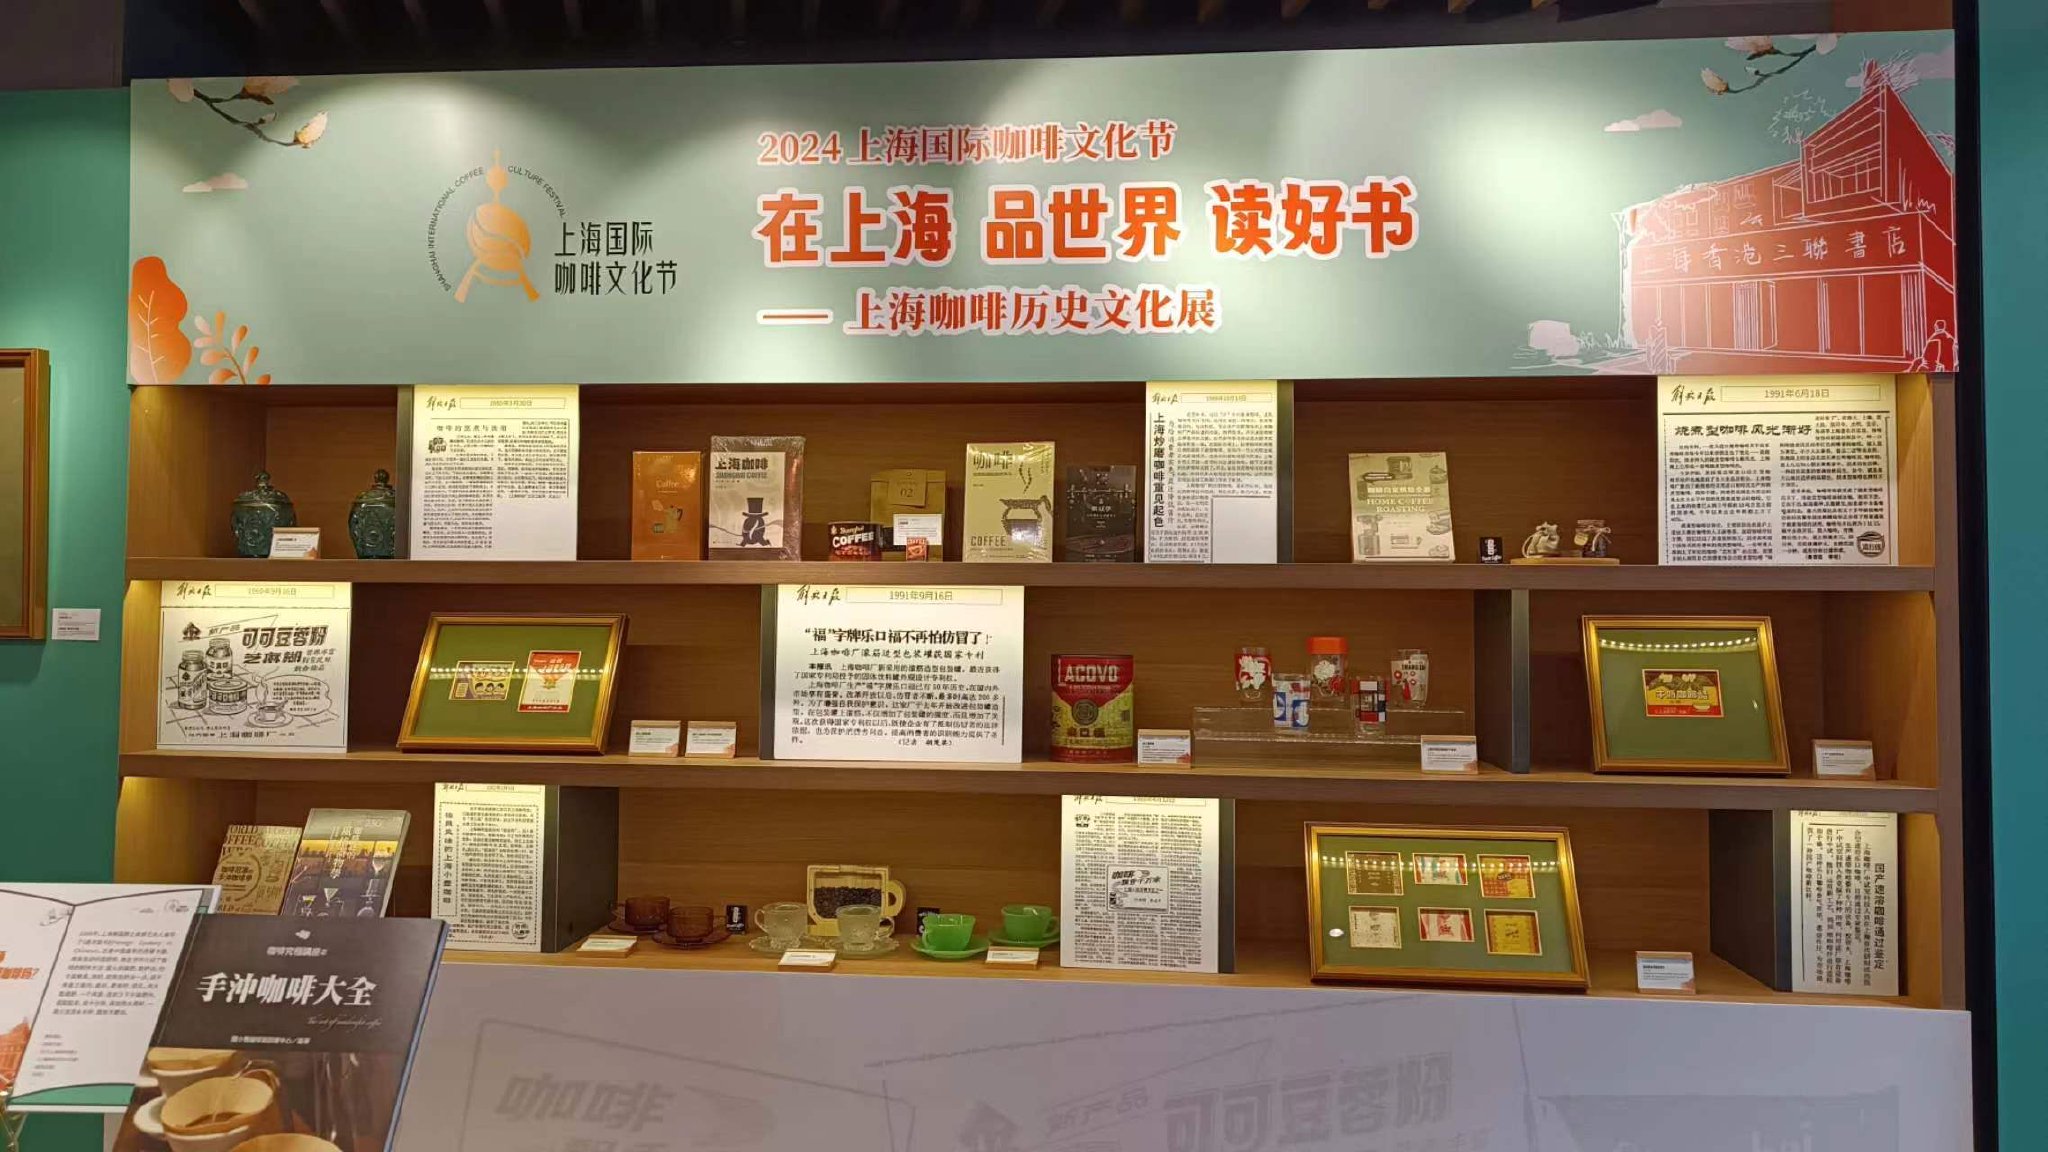 上海咖啡历史文化展在上海香港三联书店开幕